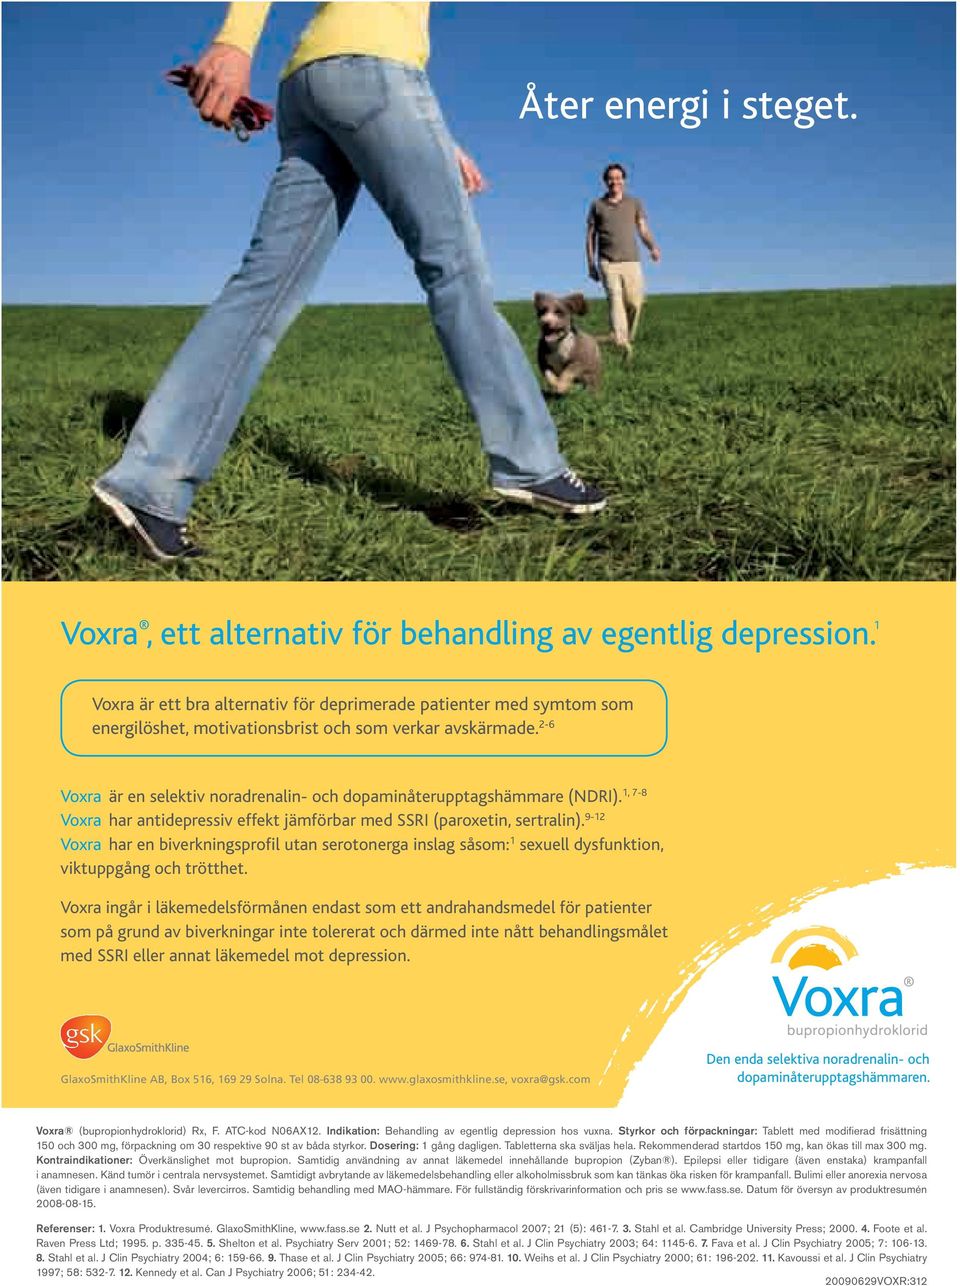 2-6 1, 7-8 Voxra är en selektiv noradrenalin- och dopaminåterupptagshämmare (NDRI). Voxra har antidepressiv effekt jämförbar med SSRI (paroxetin, sertralin).